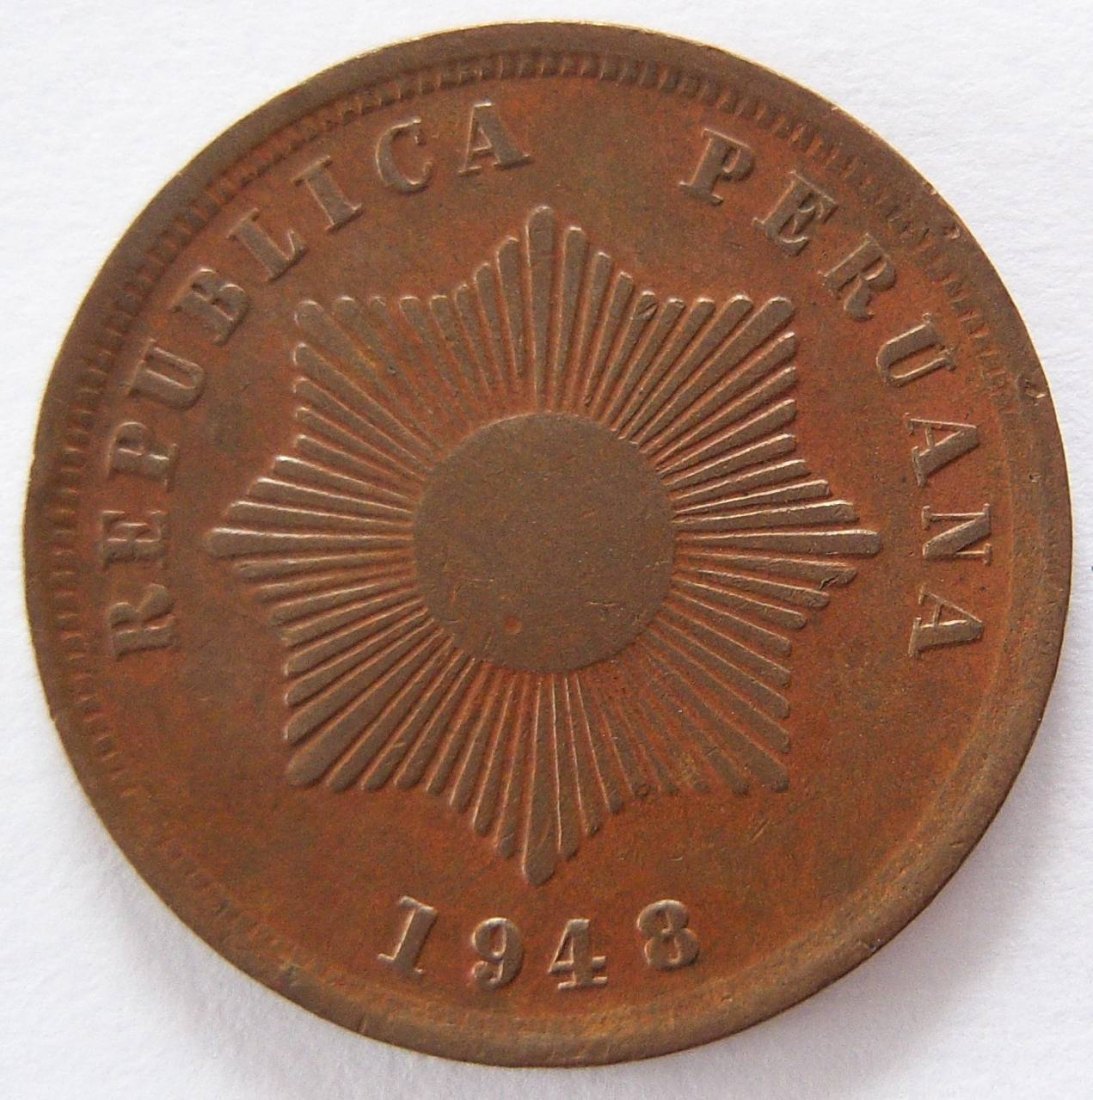  Peru Dos 2 Centavos 1948   